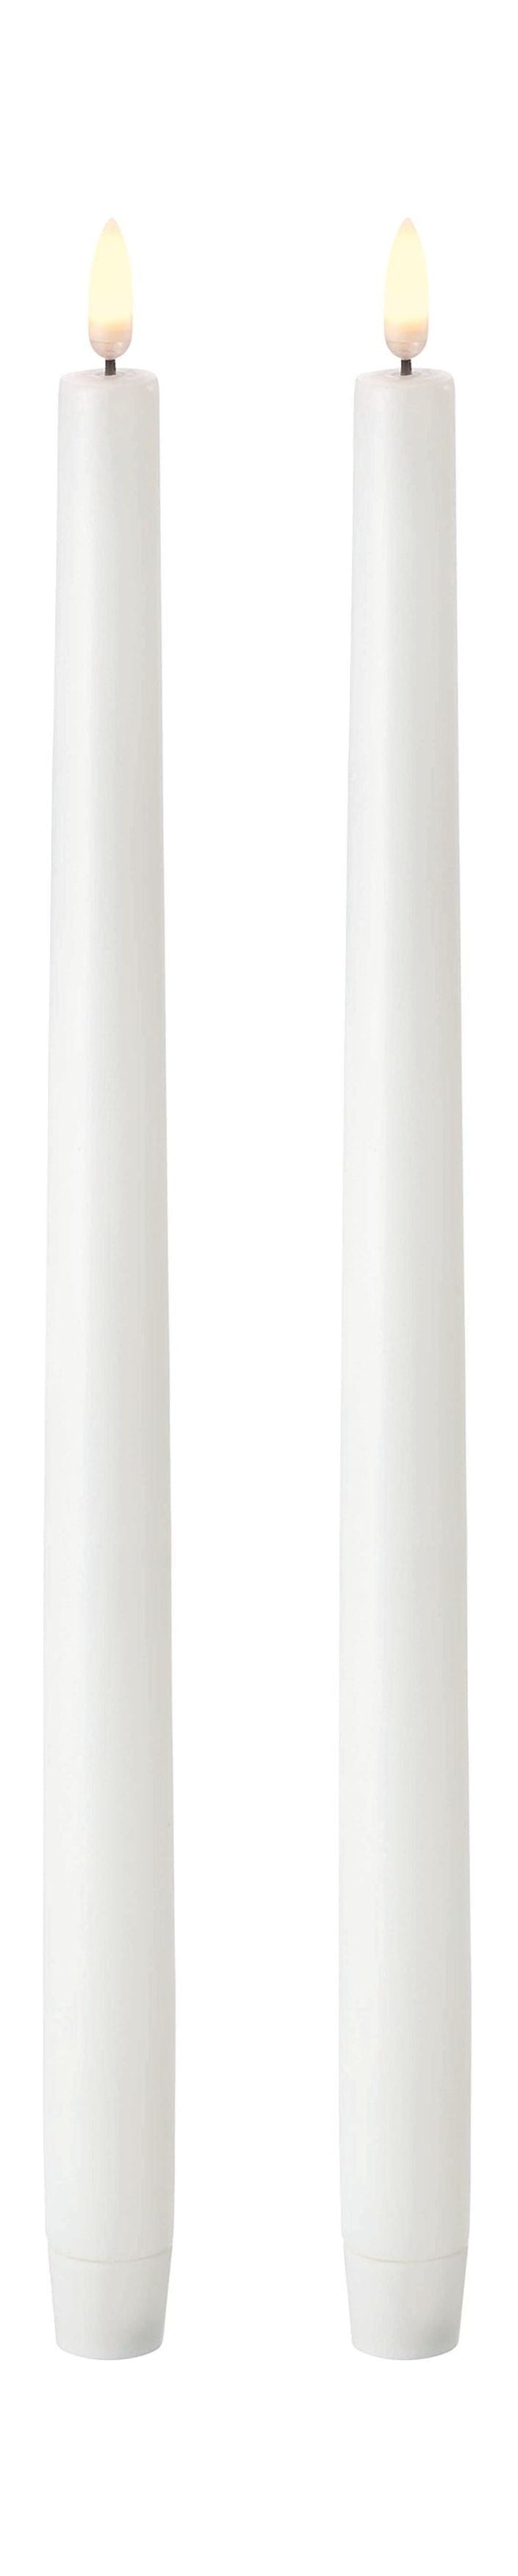 Uyuni Lighting LED -Stickkerze 3 D 2 PCs. Øx H 2,3x35 cm, nordisches Weiß